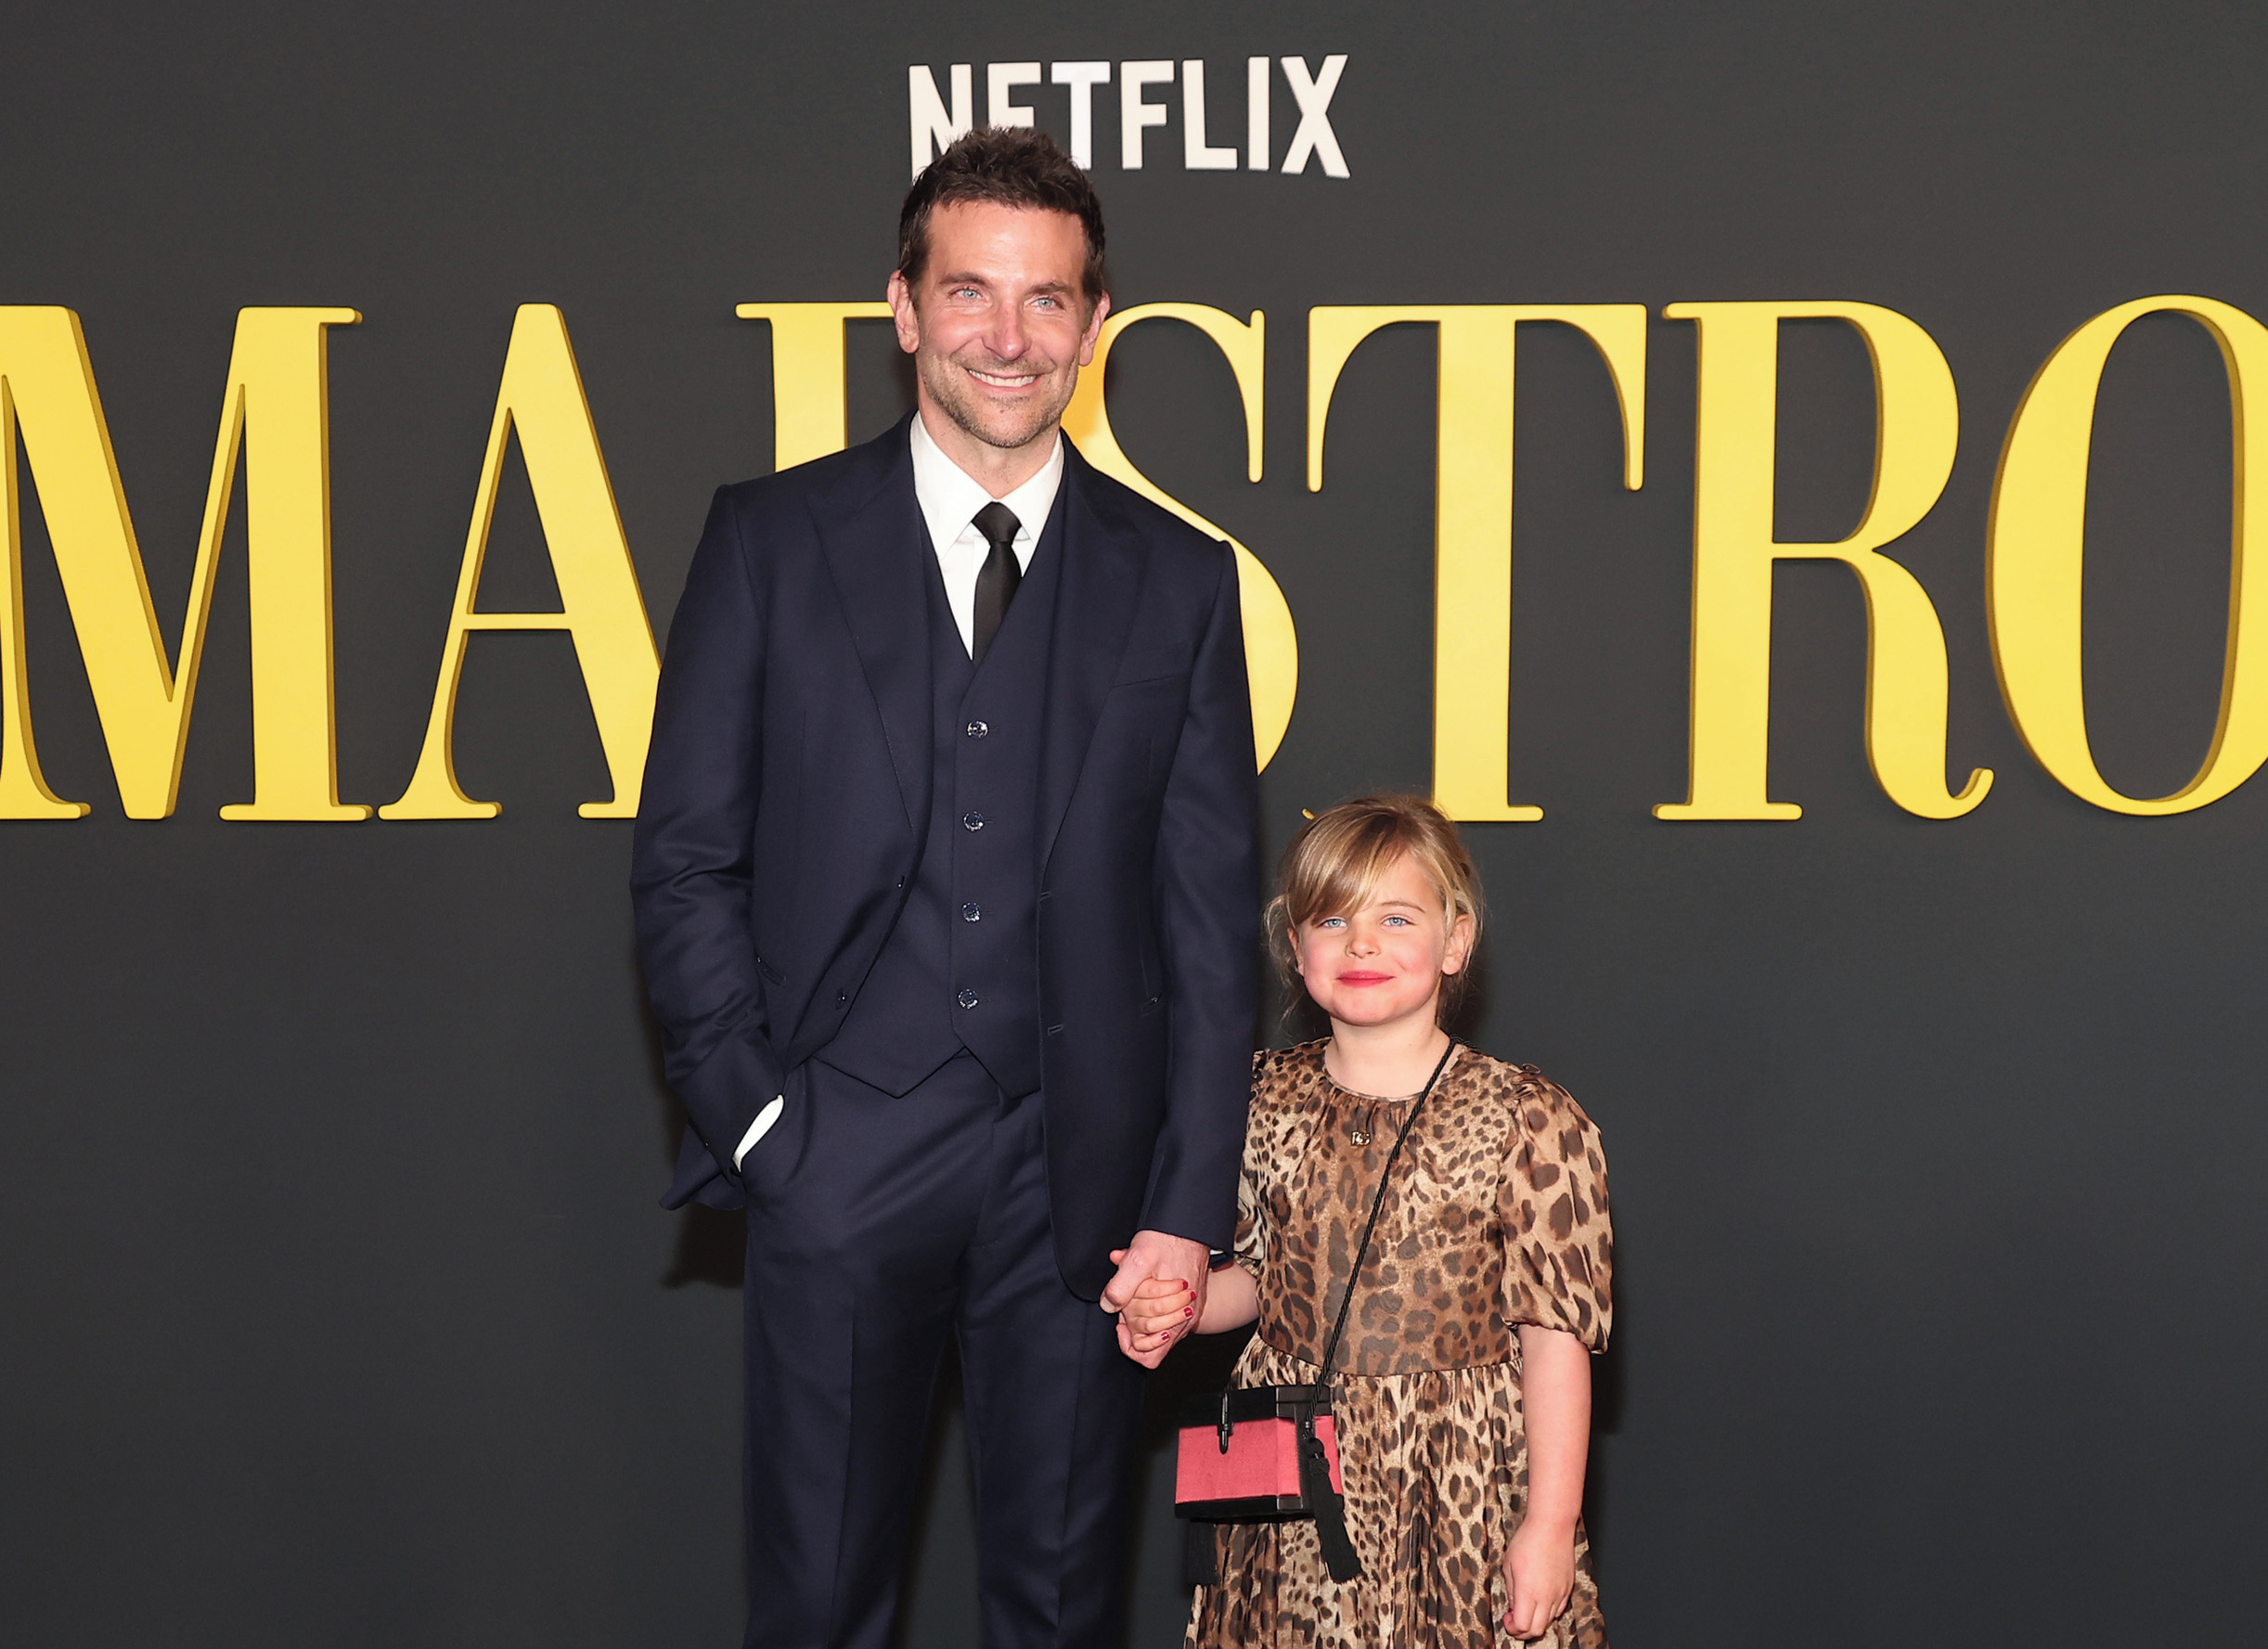 Hija de Bradley Cooper protagoniza su primera red carpet como actriz a los 6 años